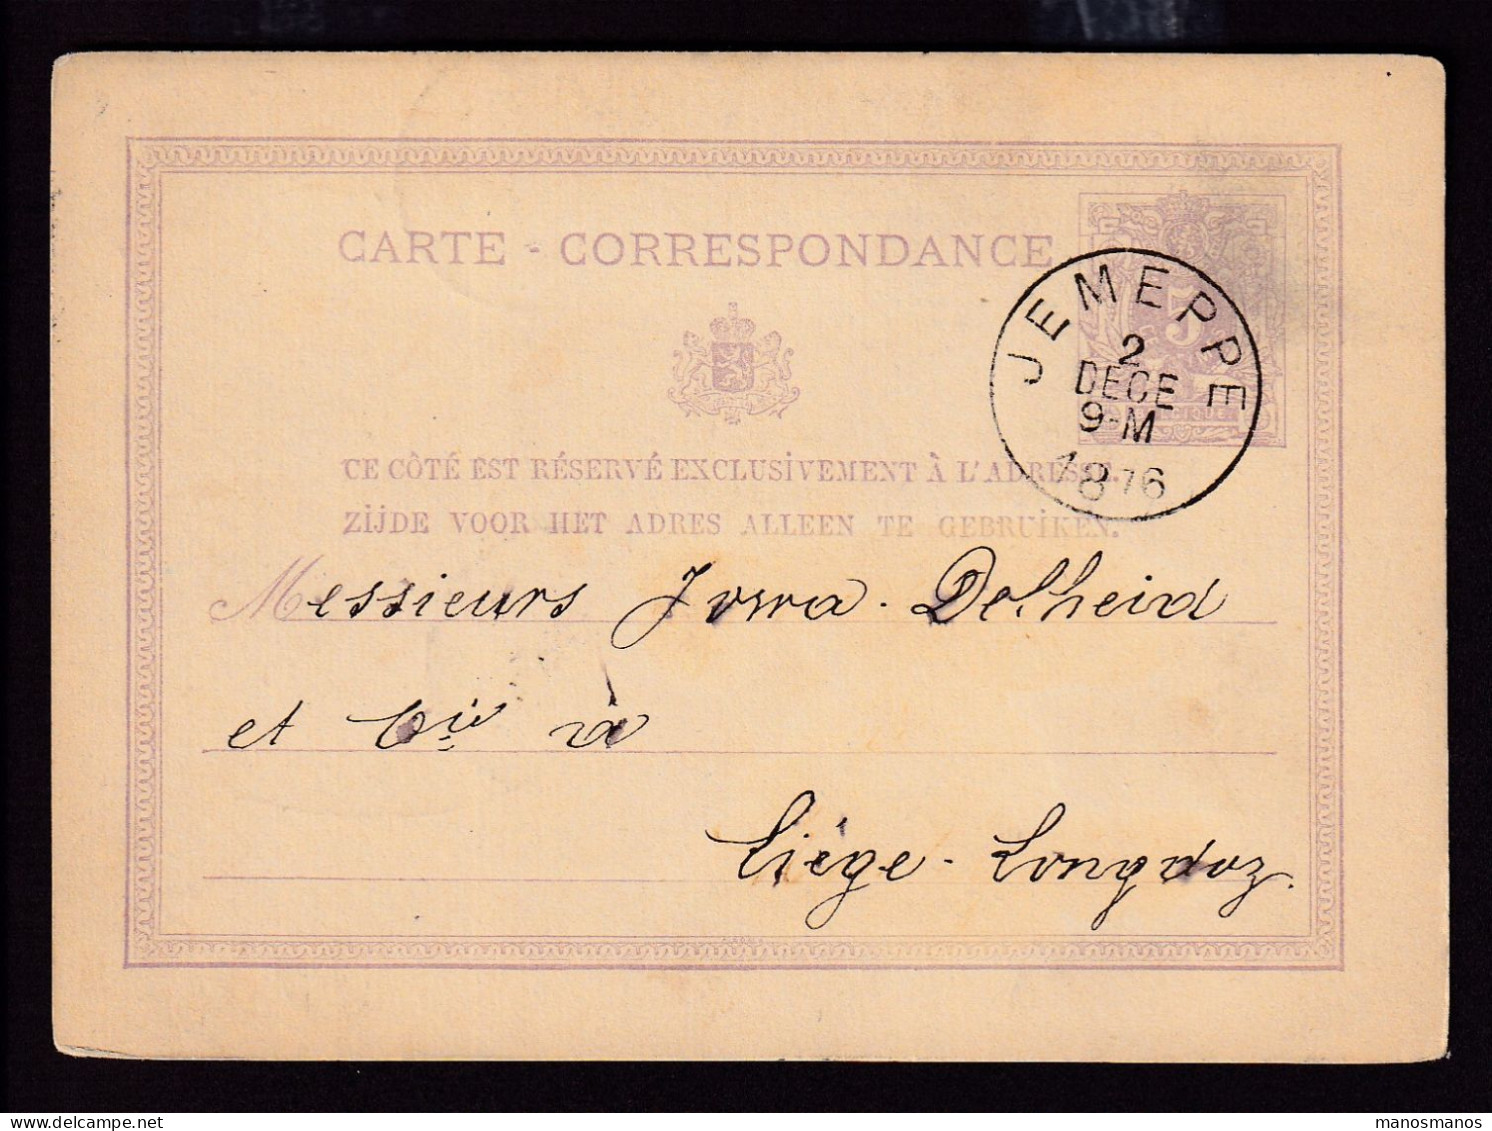 DDFF 531 - Entier Lion Couché JEMEPPE 1876 - Cachet Braconnier Frères Et Soeur à TILLEUR - Cartes Postales 1871-1909